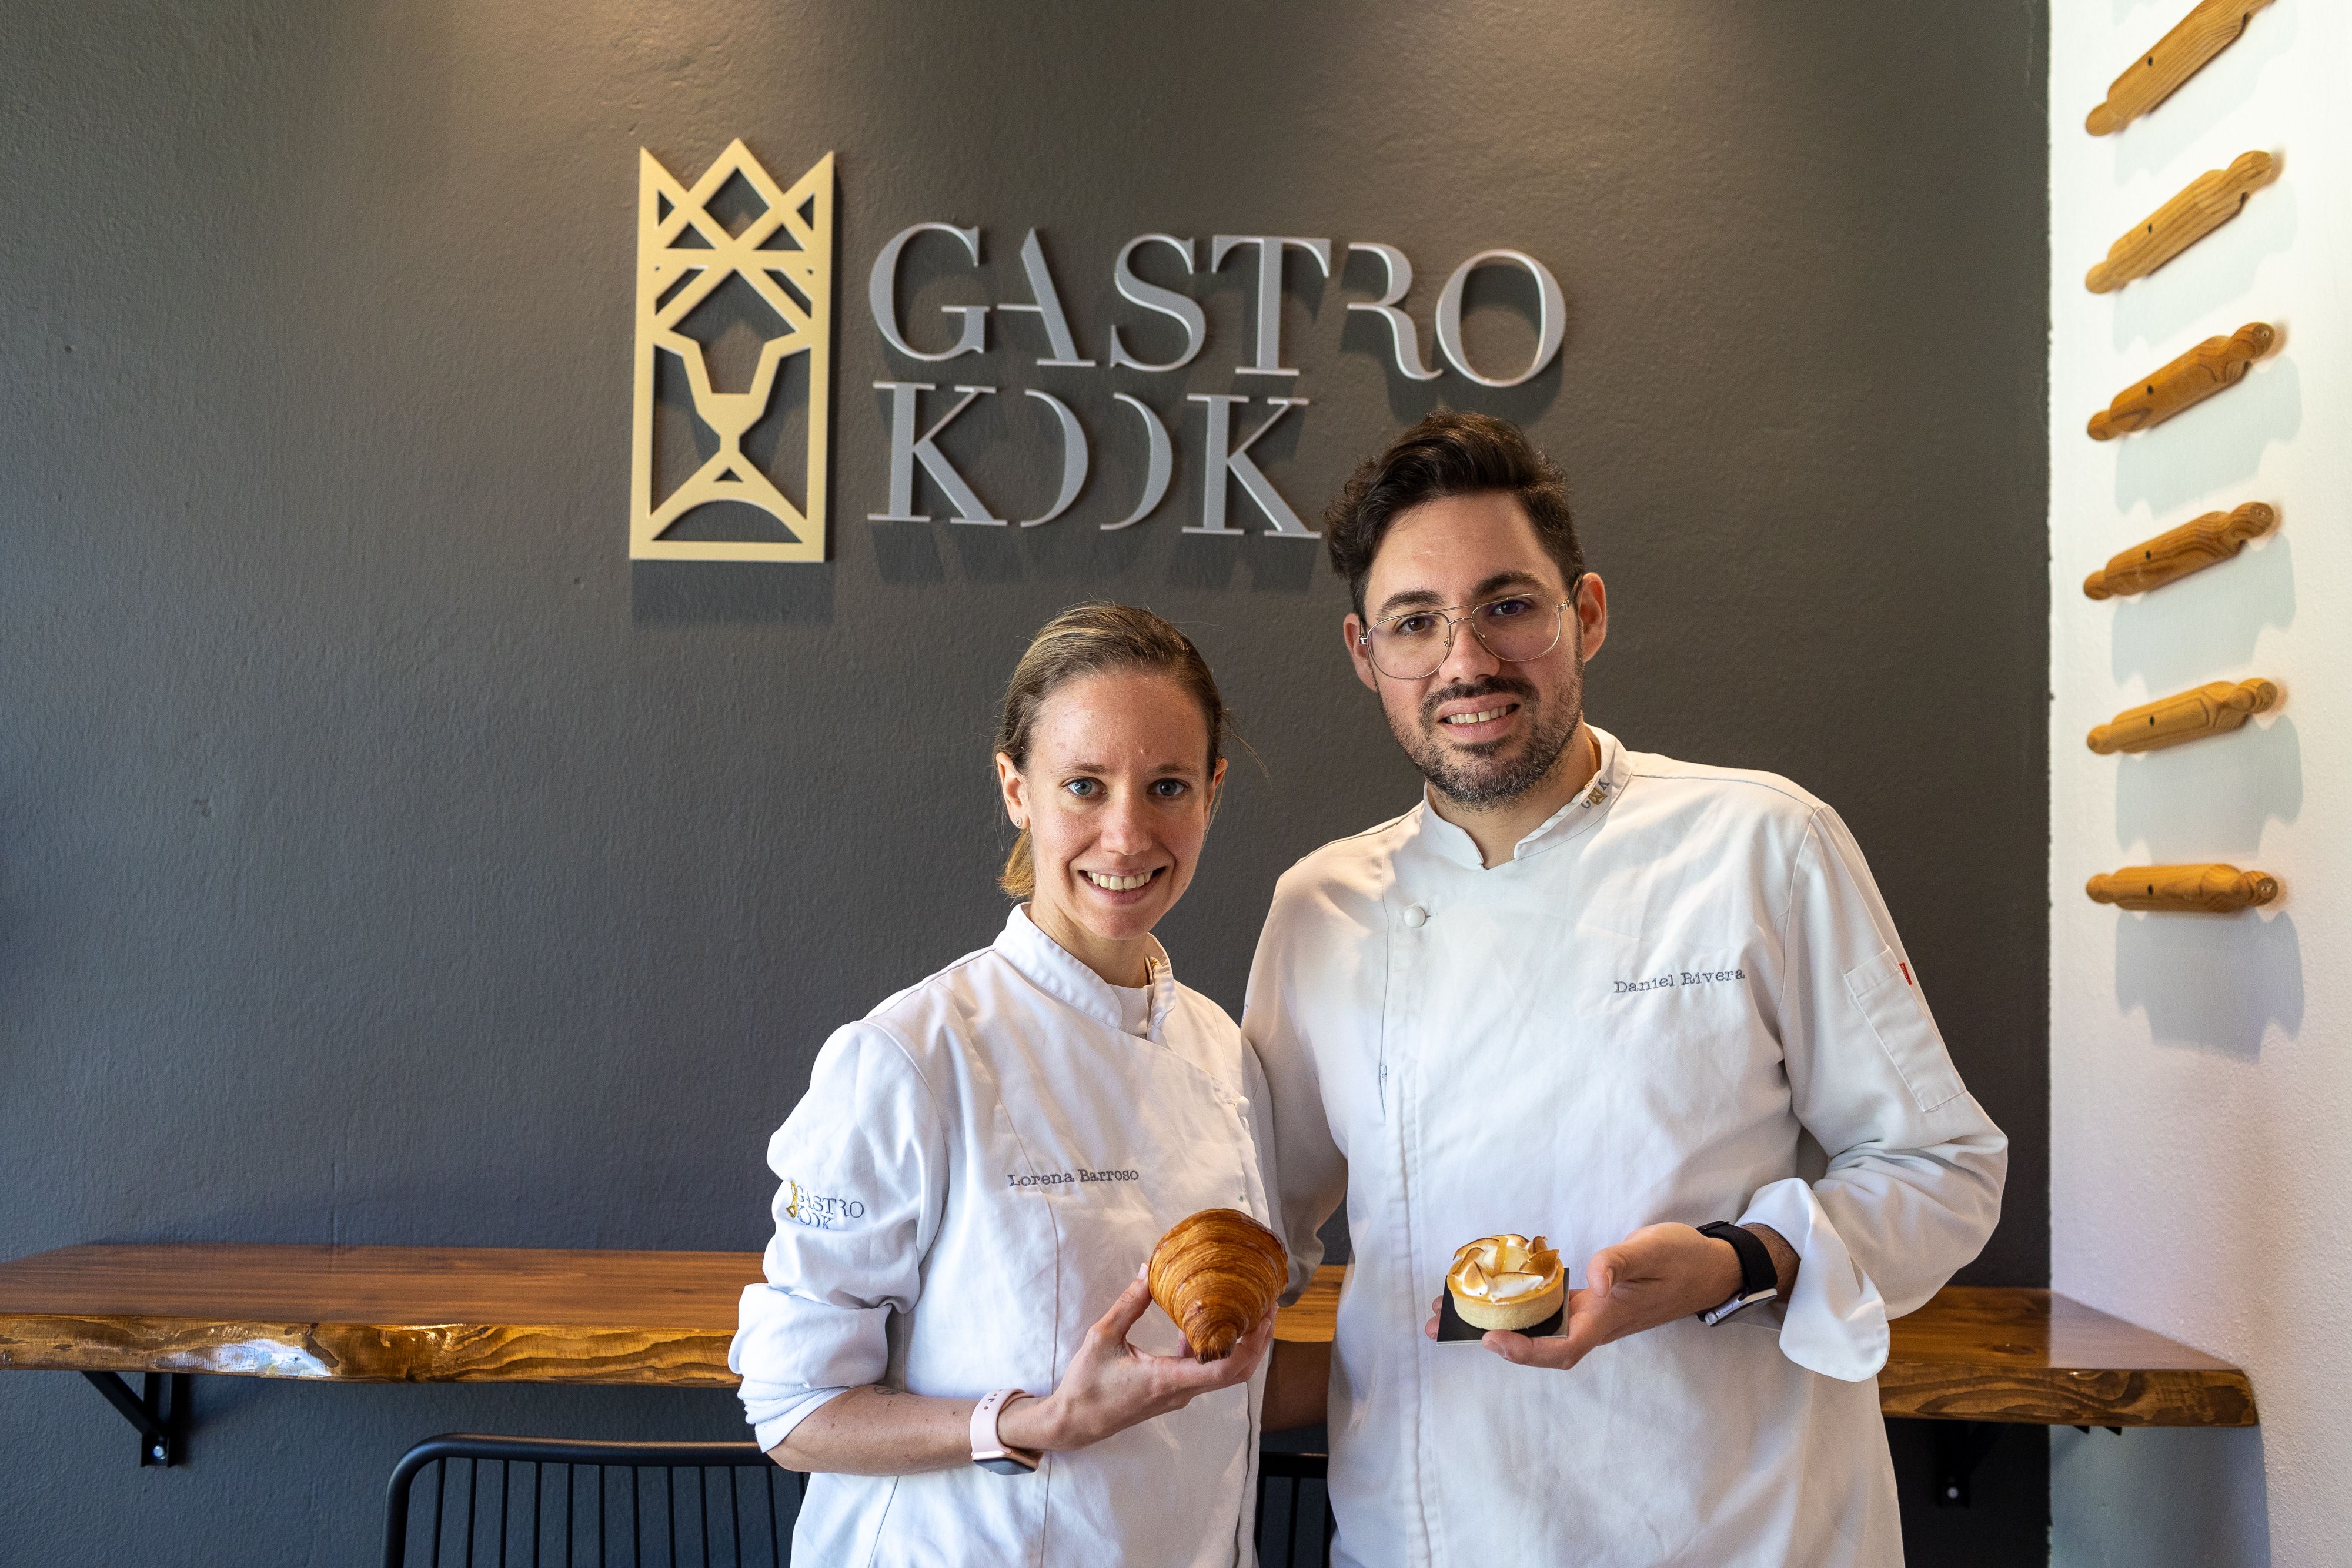 Lorena Barroso y Daniel Rivera en Gastrokook, la pastelería 'gourmet' y obrador escuela de Castellar Nuevo.